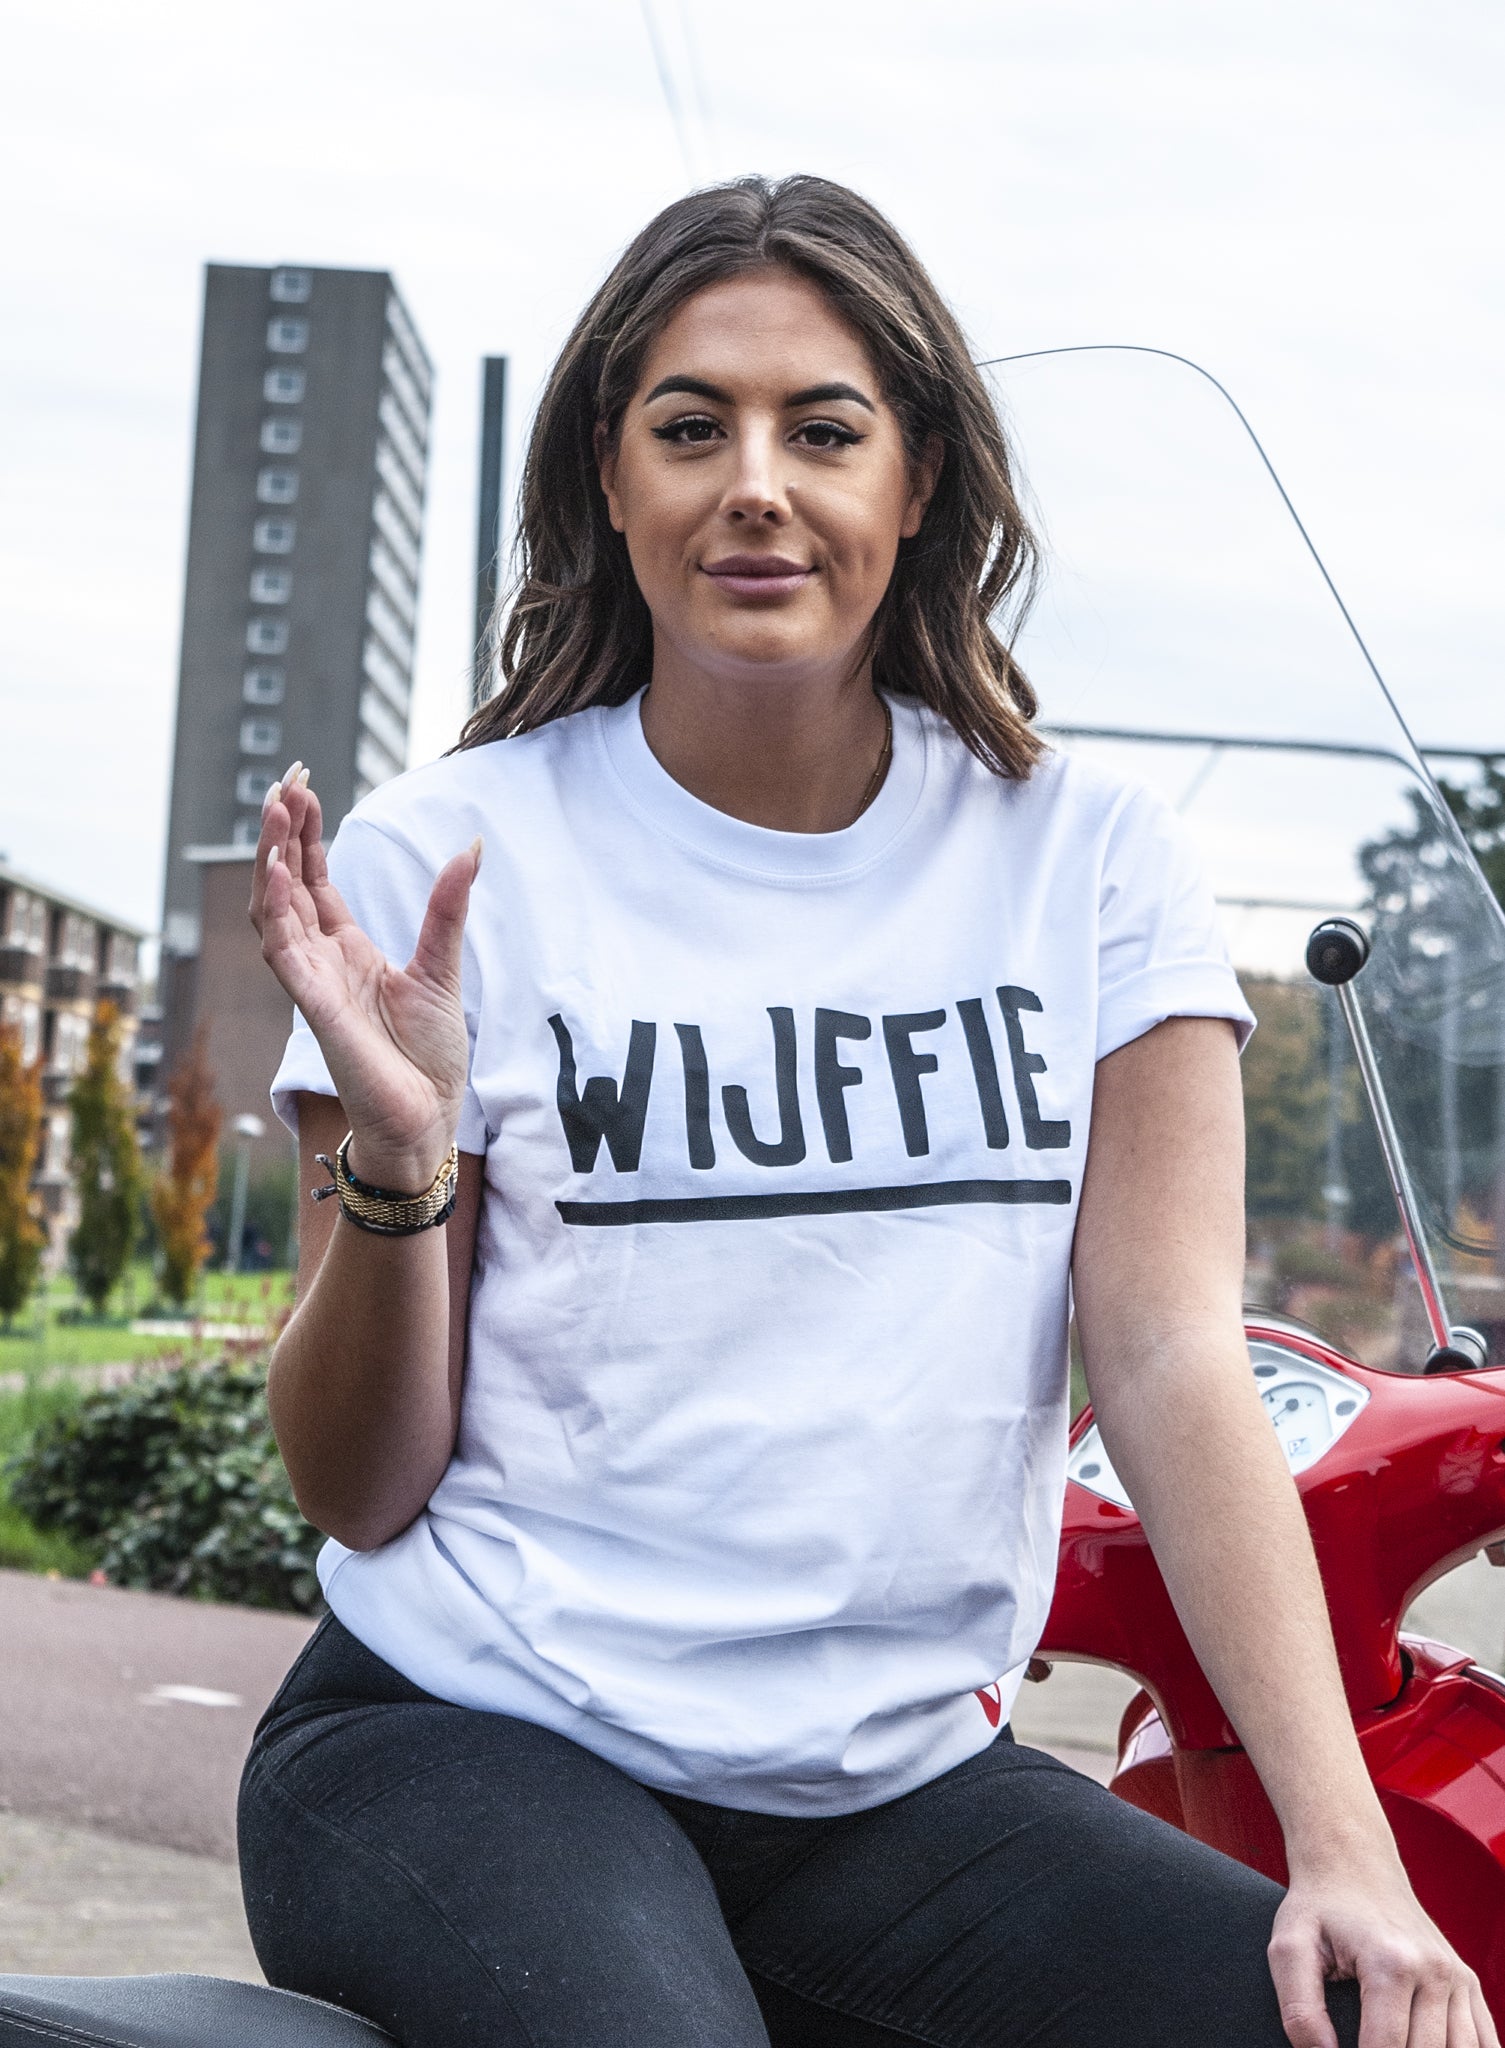 'WIJFFIE' SHIRT